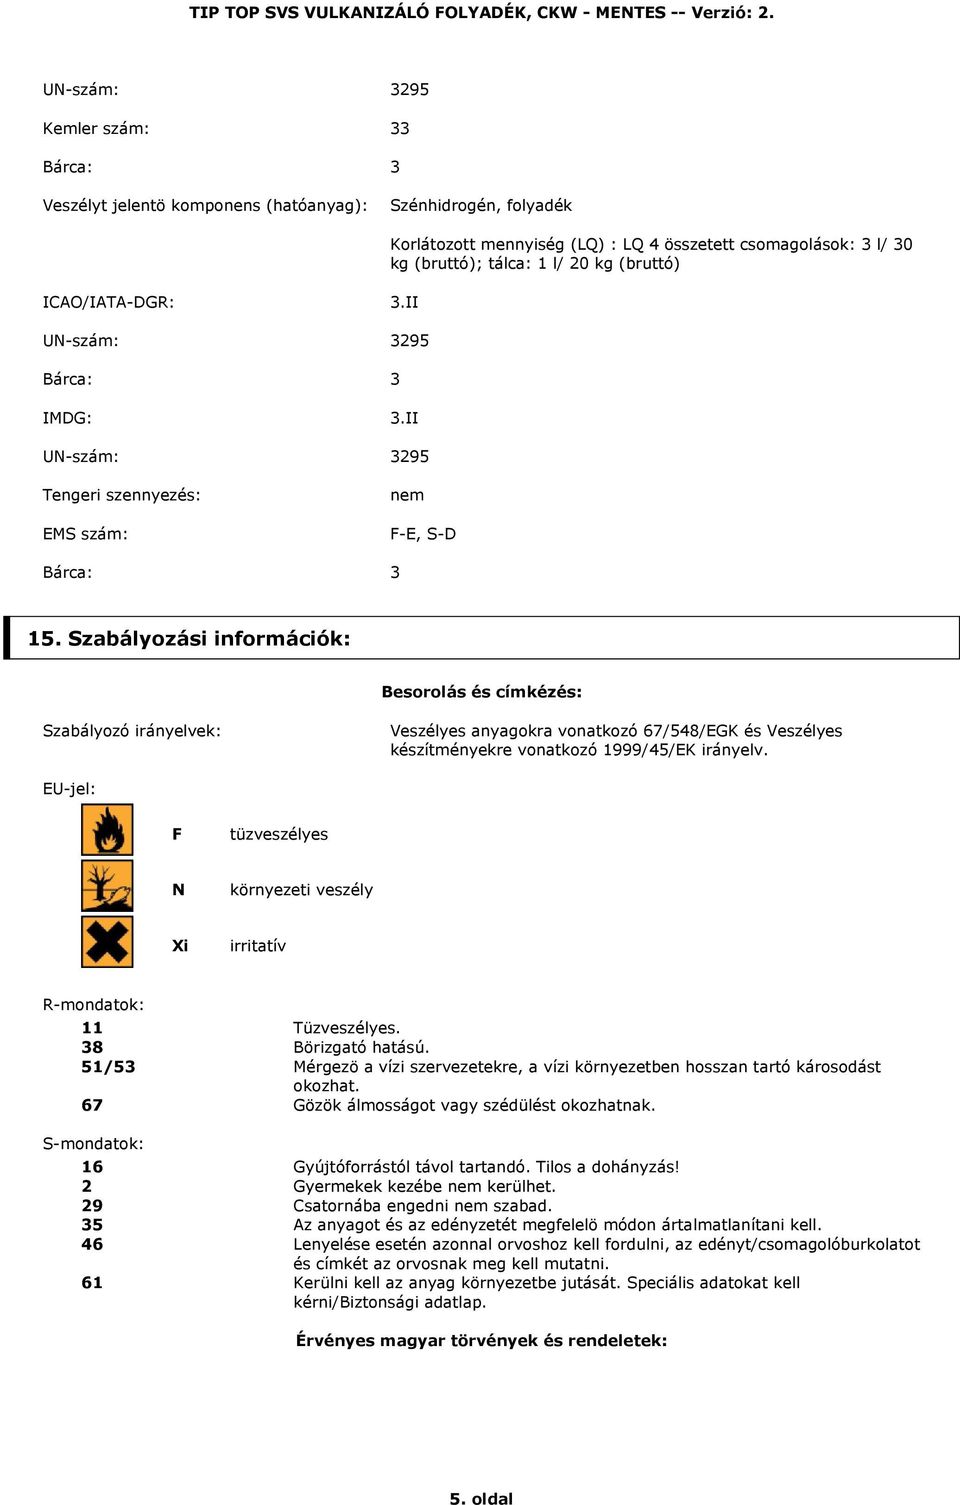 Szabályozási információk: Besorolás és címkézés: Szabályozó irányelvek: Veszélyes anyagokra vonatkozó 67/548/EGK és Veszélyes készítményekre vonatkozó 1999/45/EK irányelv.